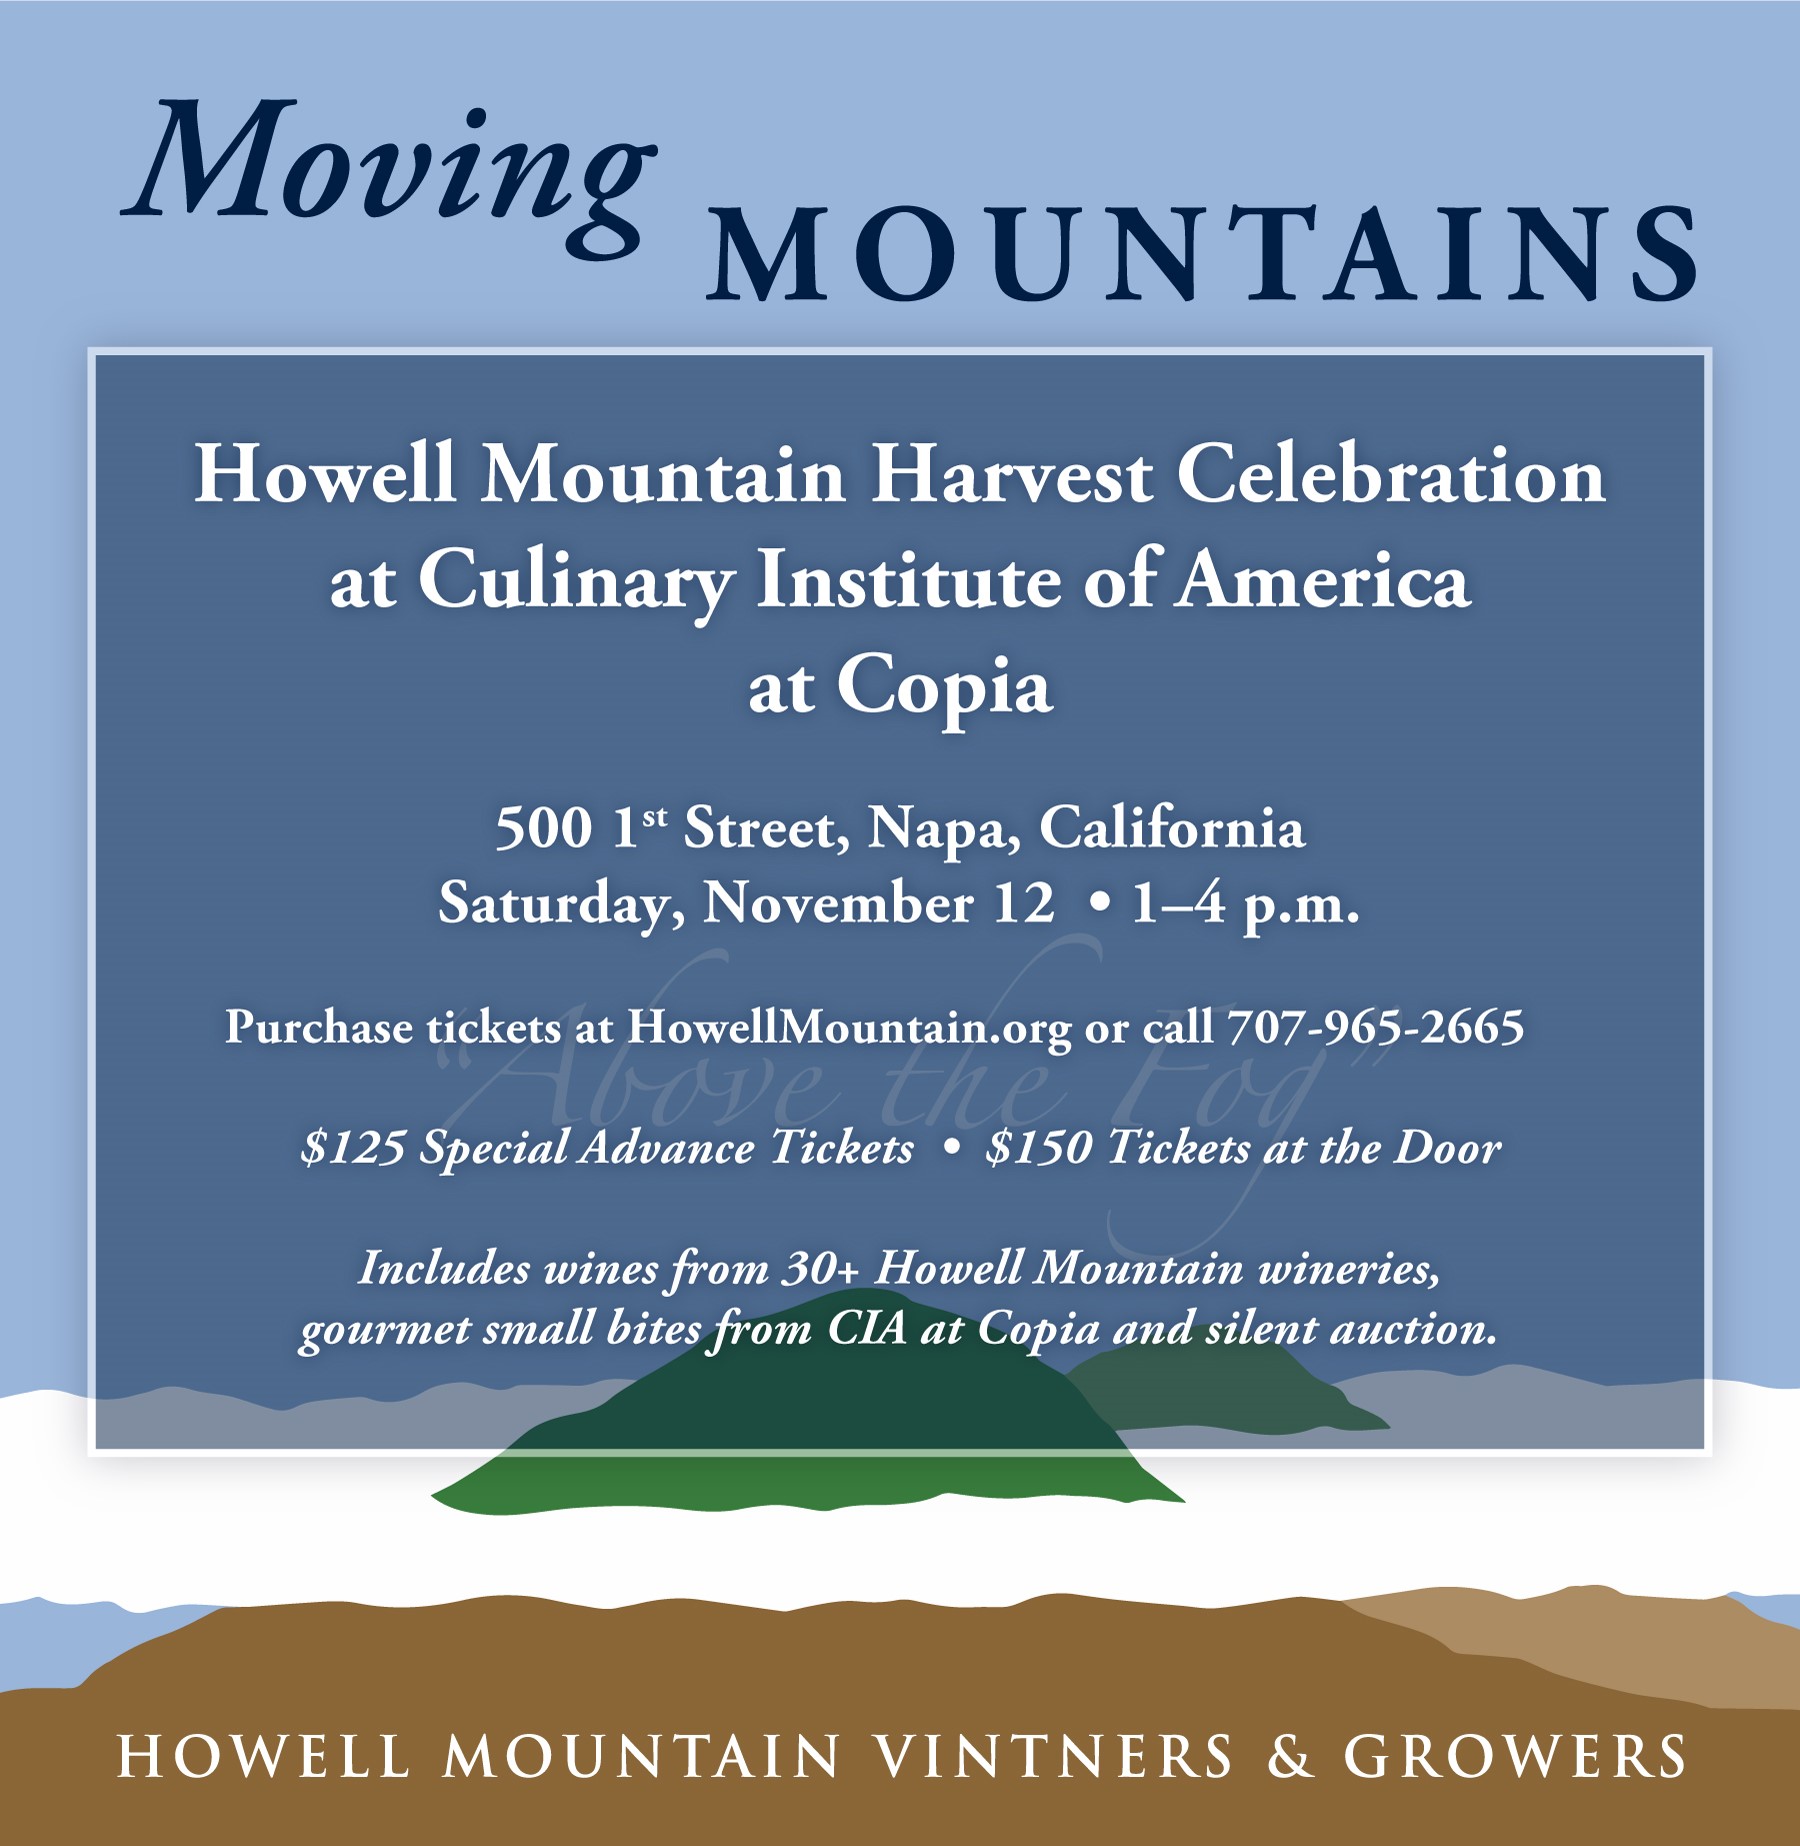 Howell Mountain Harvest Celebration